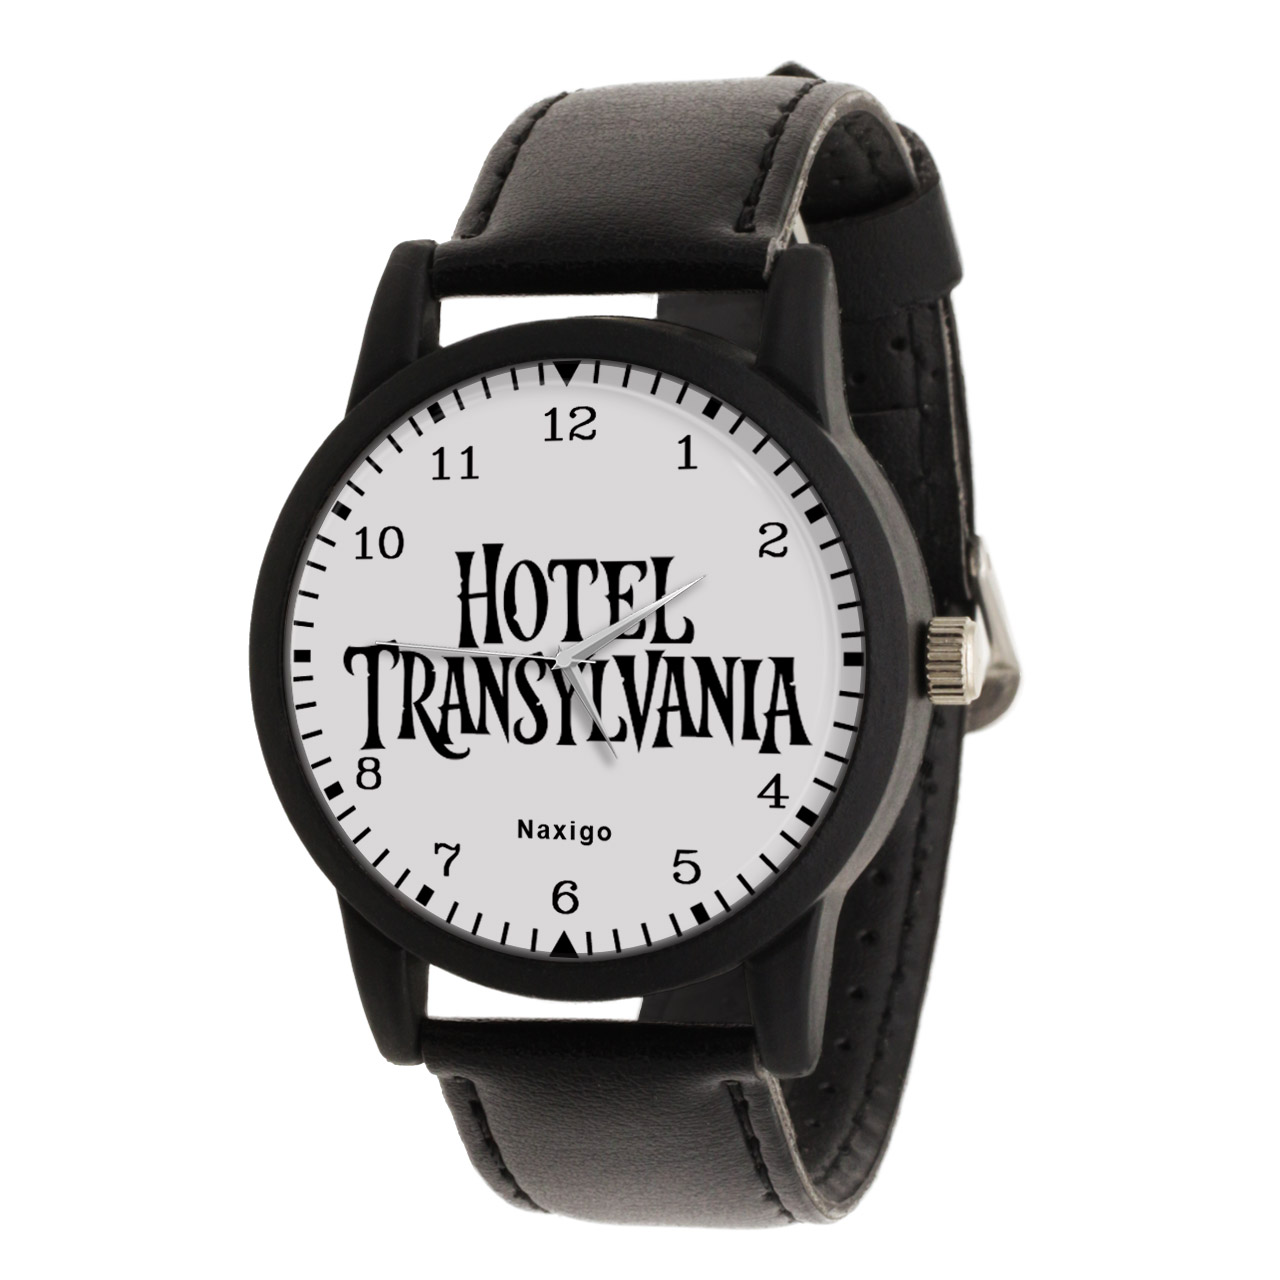 ساعت مچی عقربه ای ناکسیگو مدل Hotel Transylvania کد LF14349 -  - 1